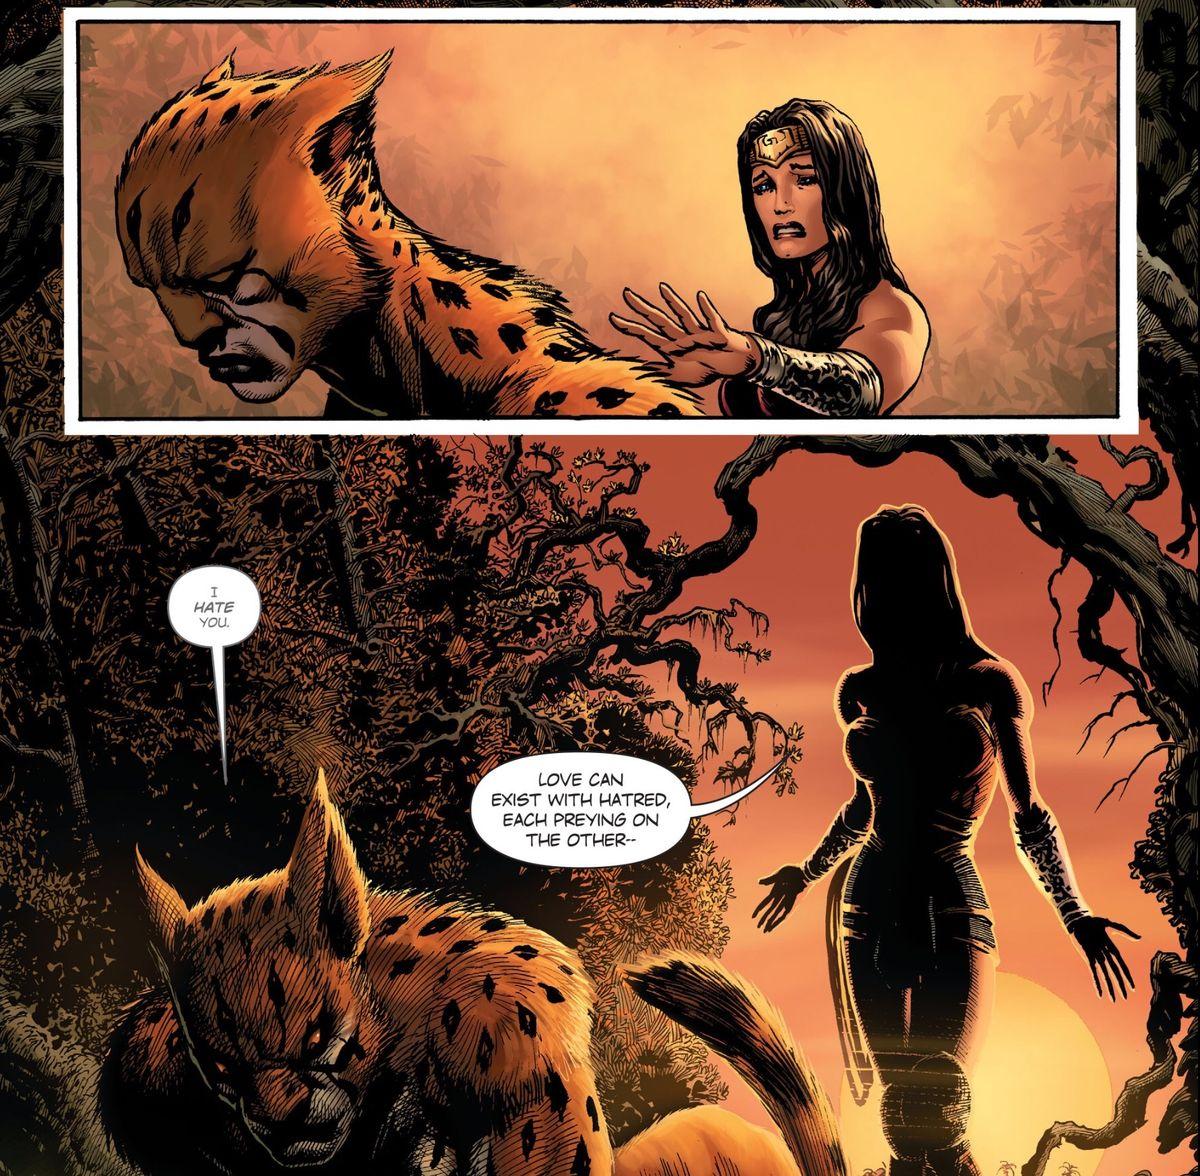 Who is Wonder Woman 1984's villain, the Cheetah?